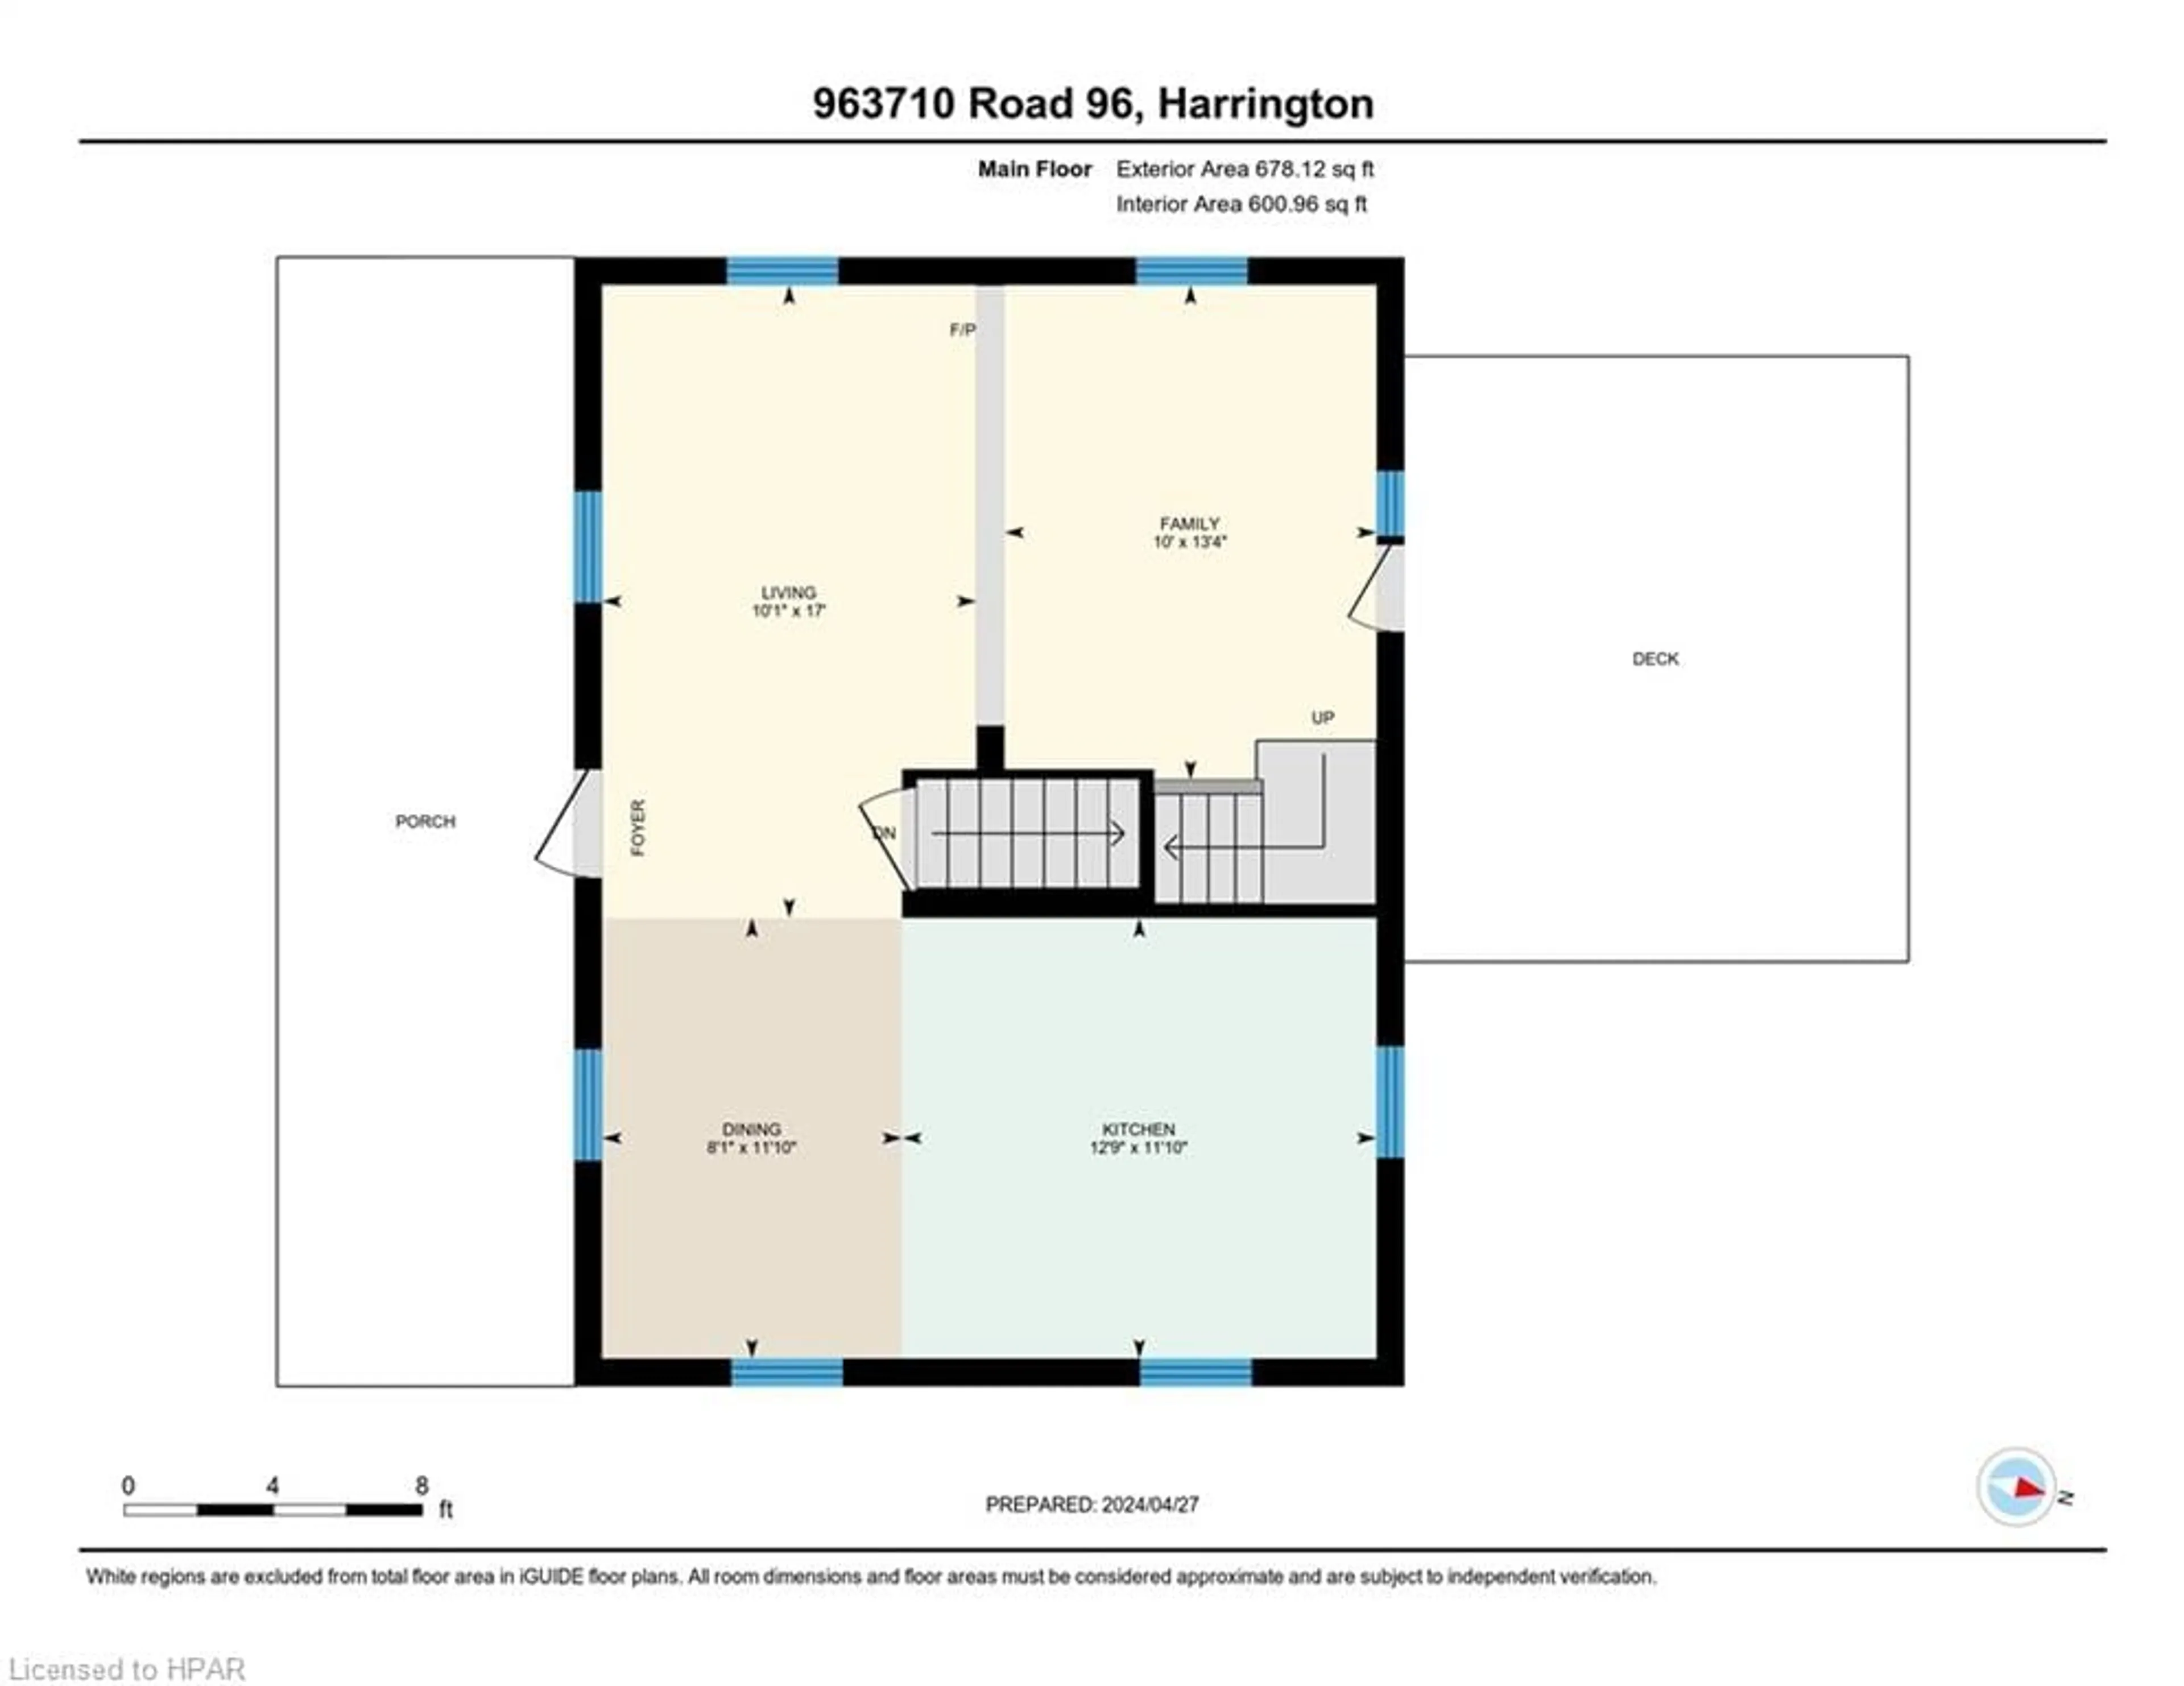 Floor plan for 963710 Road 96, Harrington Ontario N0J 1J0